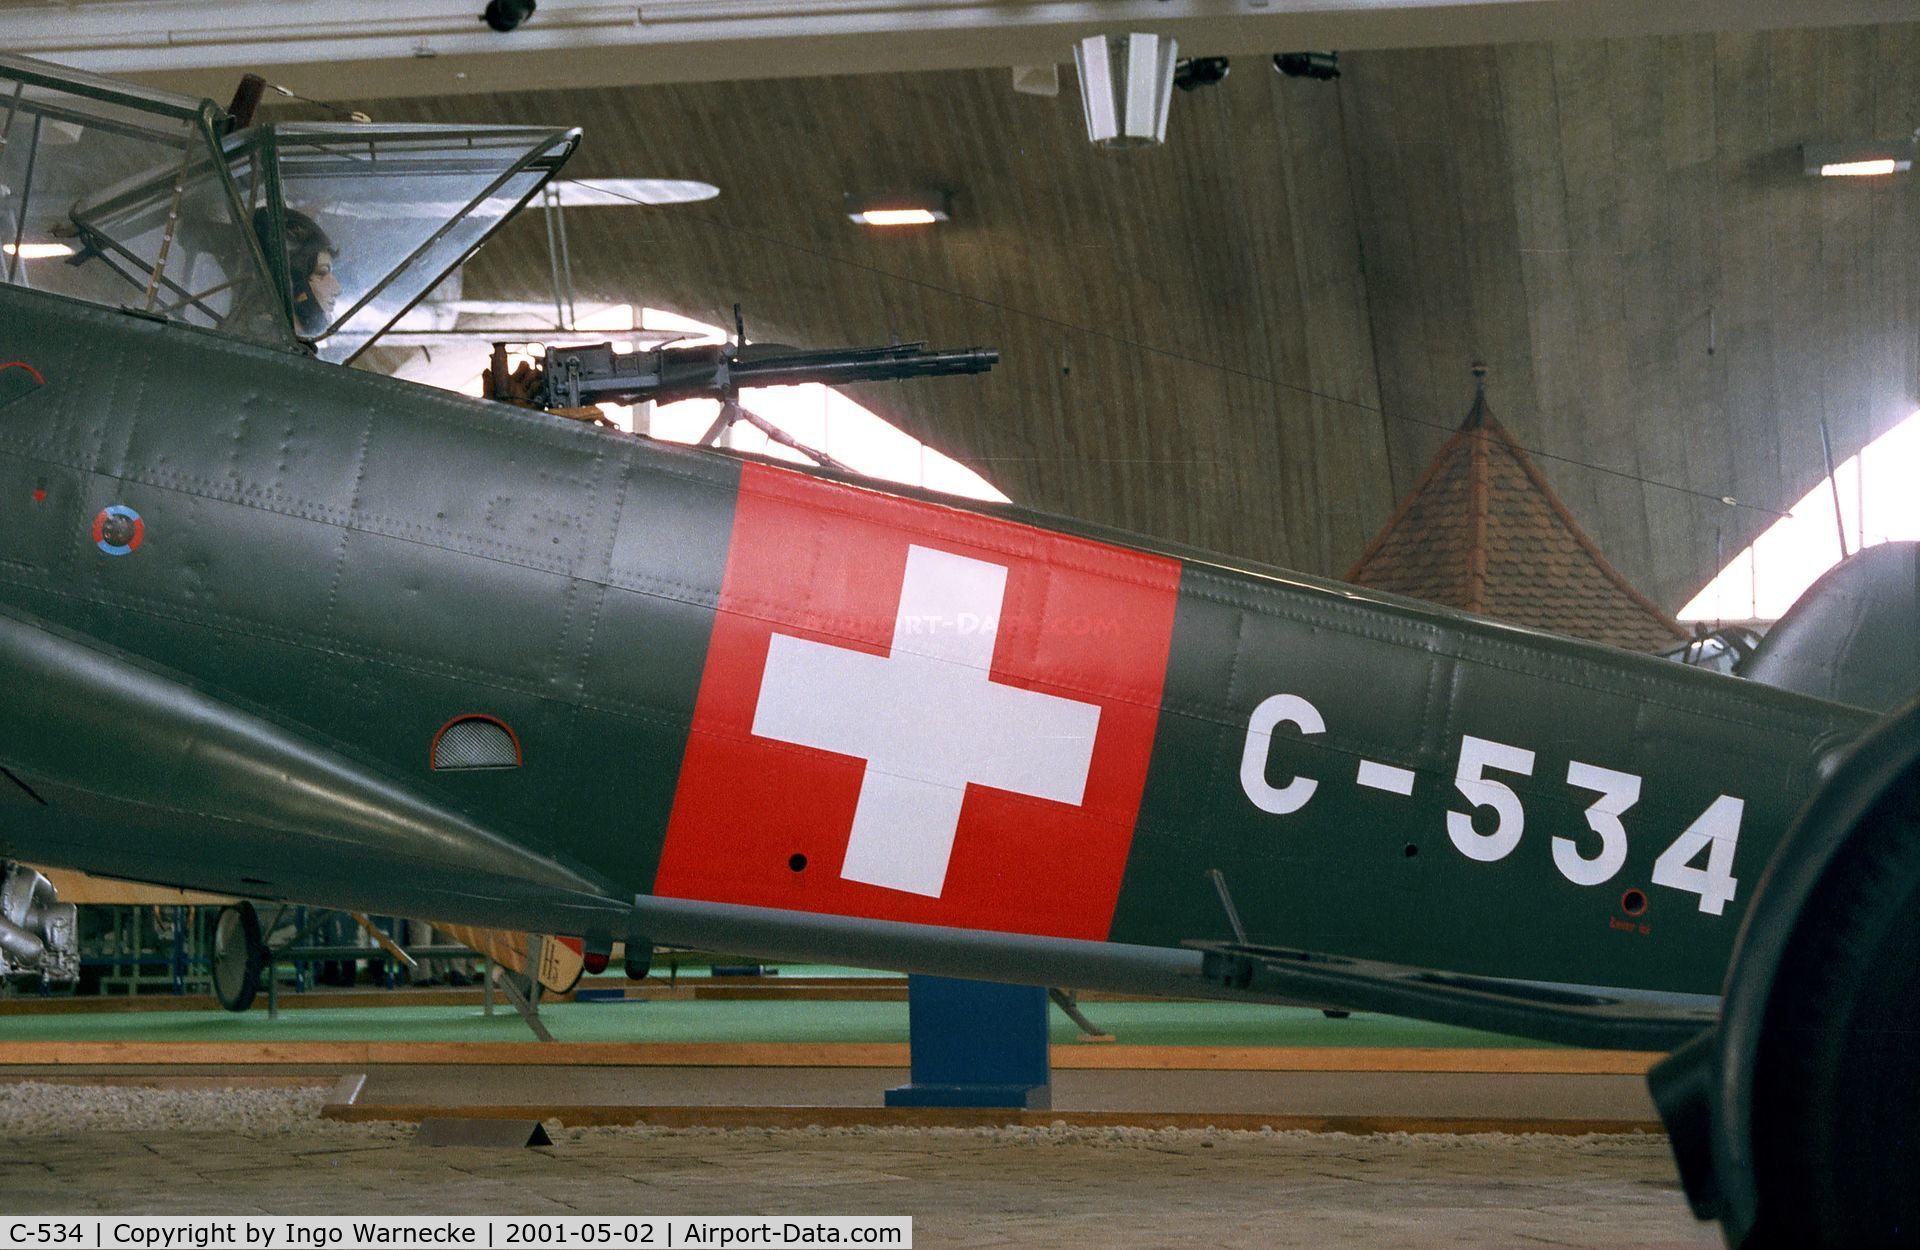 C-534, EKW C-3603-1 C/N 314, Eidgenössische Flugzeugwerke C-3603-1 at the Fliegermuseum Dübendorf